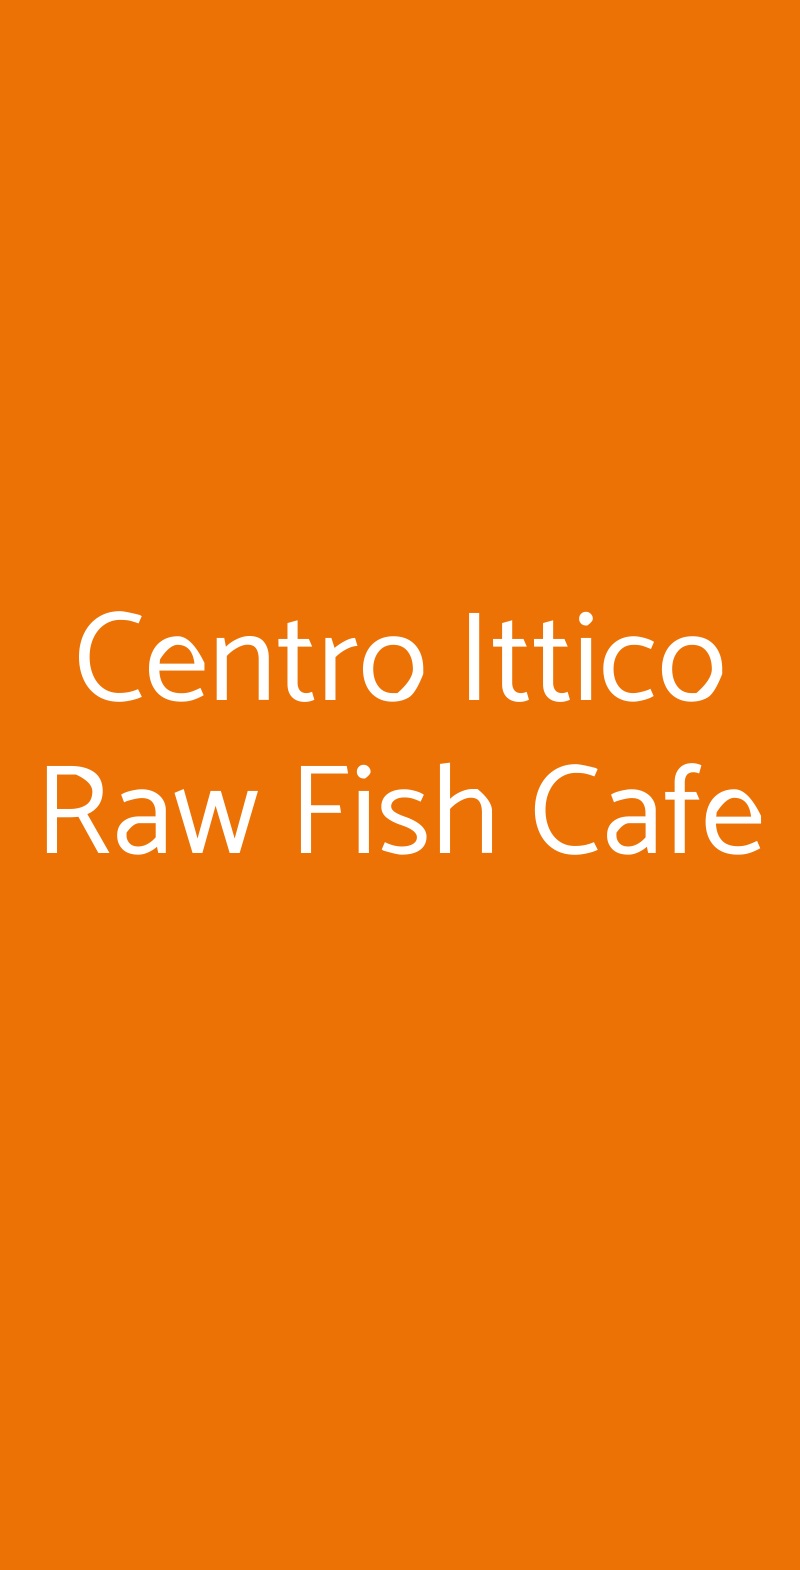 Centro Ittico Raw Fish Cafe Milano menù 1 pagina